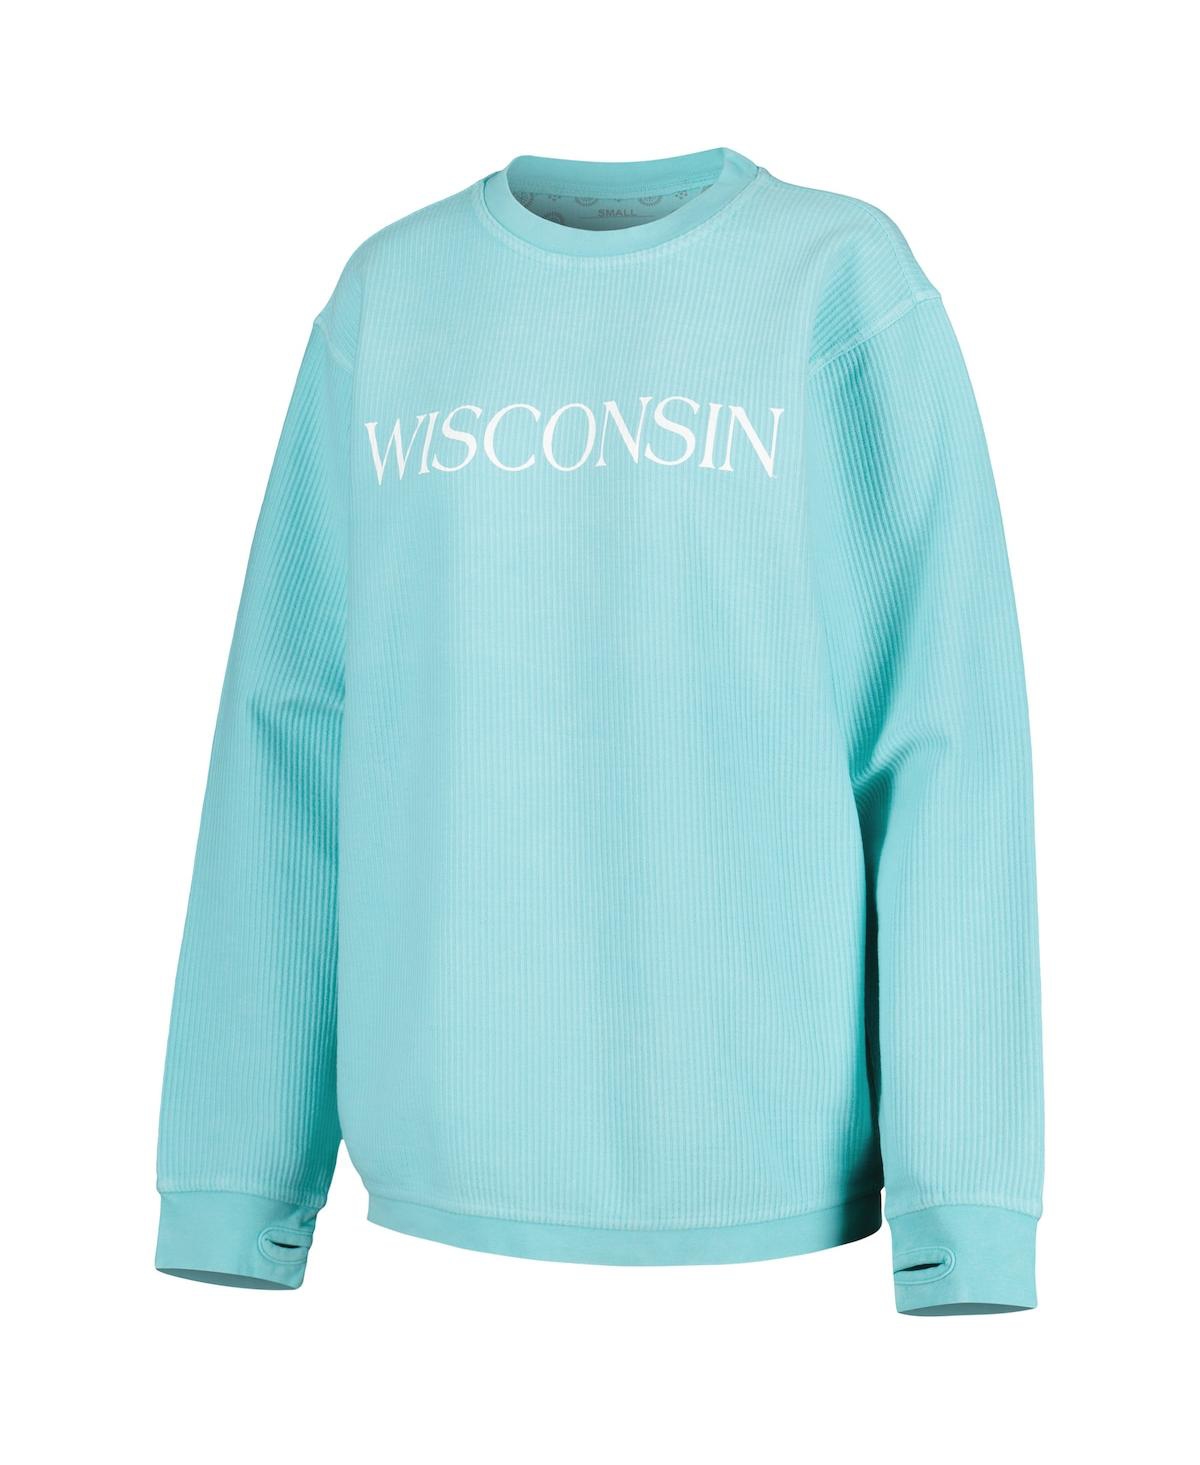 Shop Pressbox Women's  Mint Wisconsin Badgers Comfy Cord Bar Print Pullover Sweatshirt